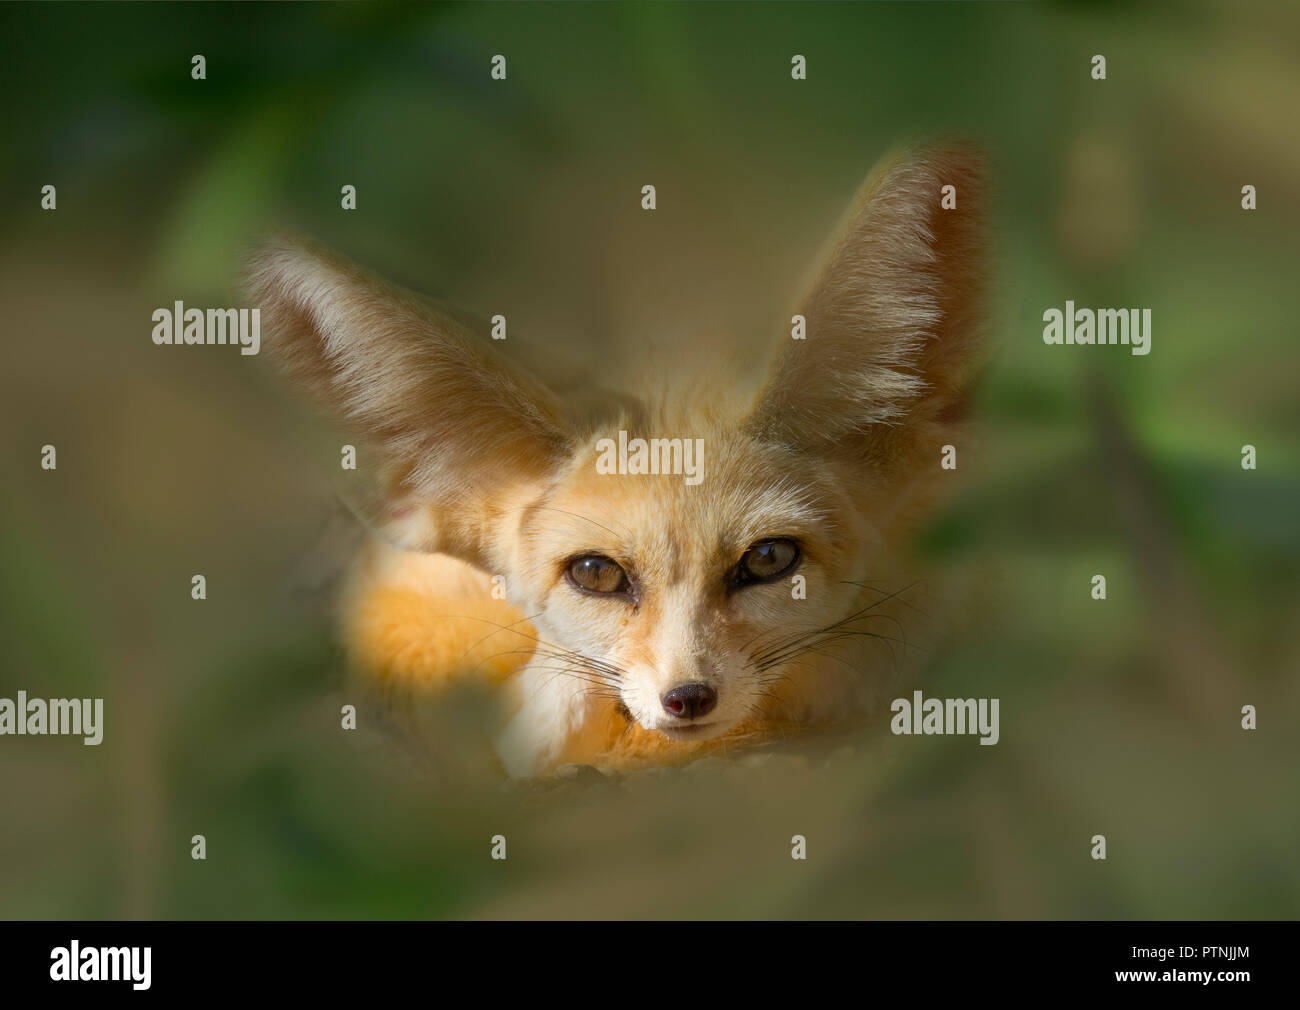 Fennec fox Vulpes zerda dormir fotografía cautivo Foto de stock